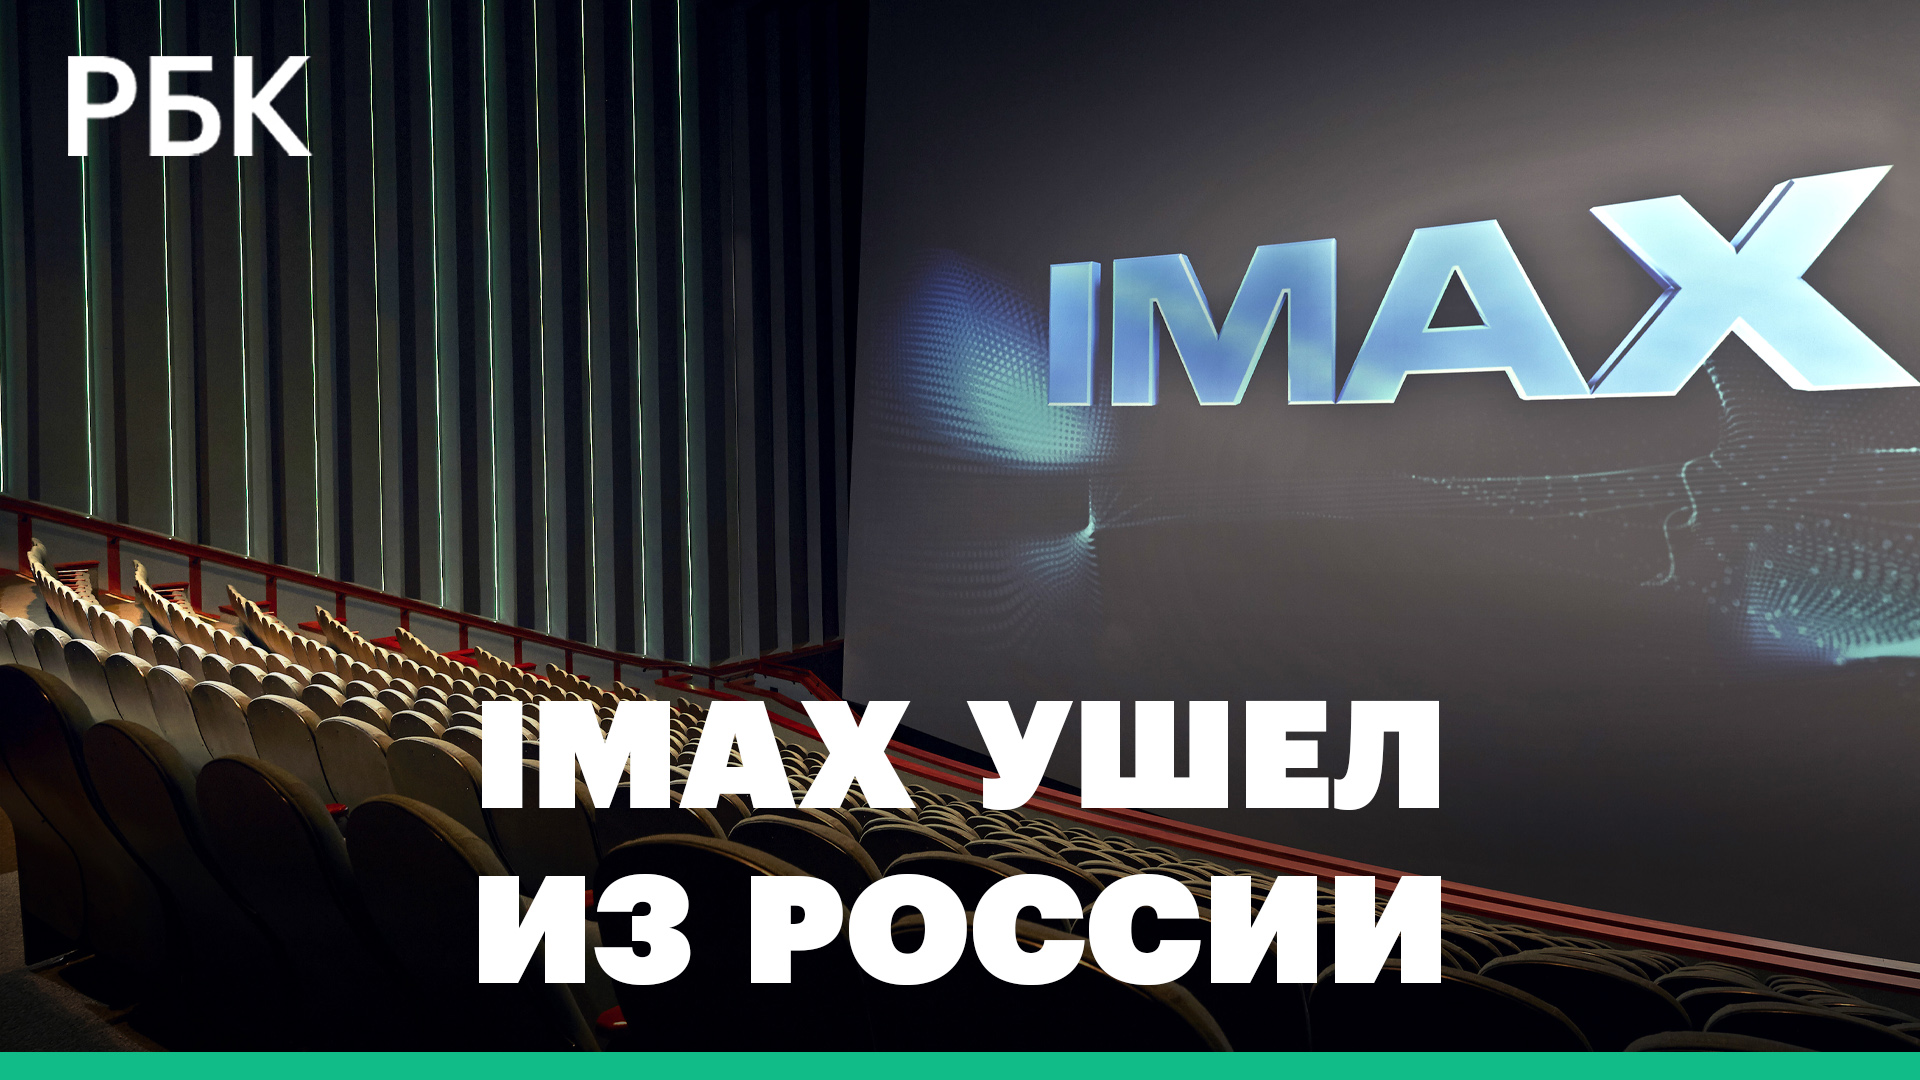 IMAX уходит из России: сколько кинотеатров закроют?